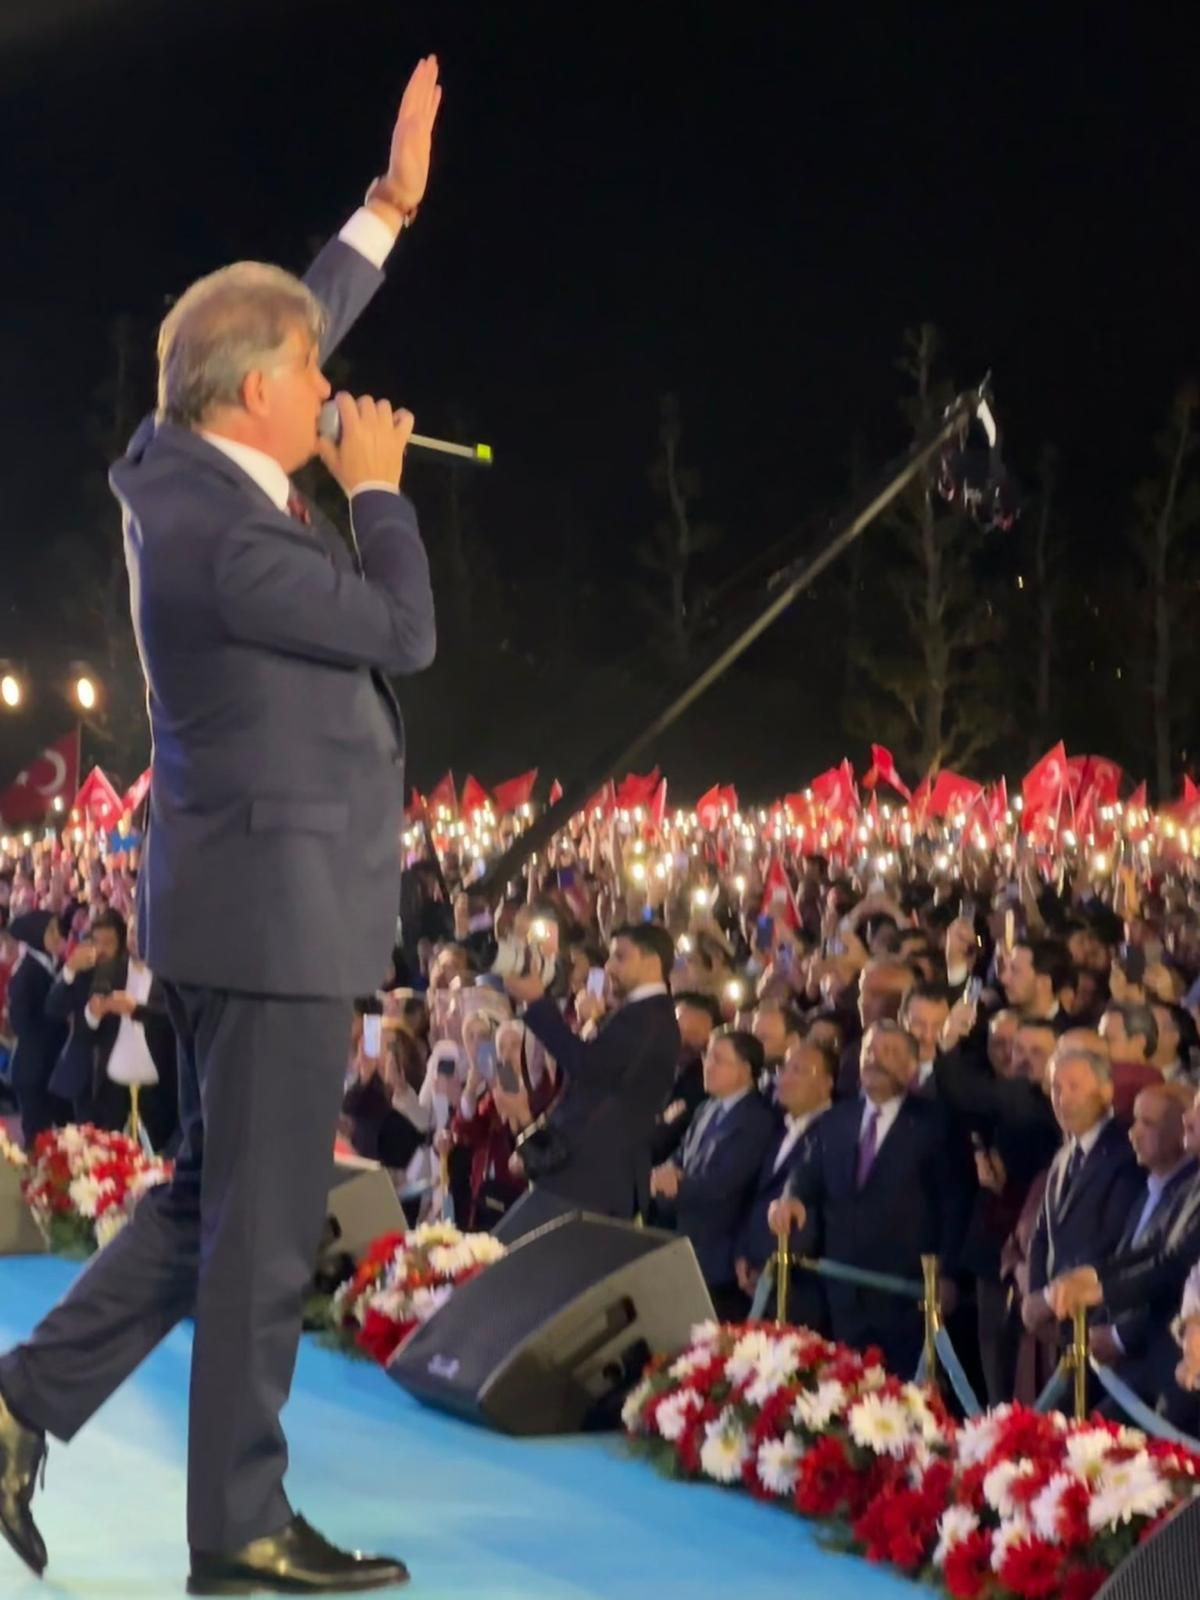 Meydanları onun gibi coşturan yok! Erdoğan'ın arkasındaki güçlü ses! - Sayfa 1